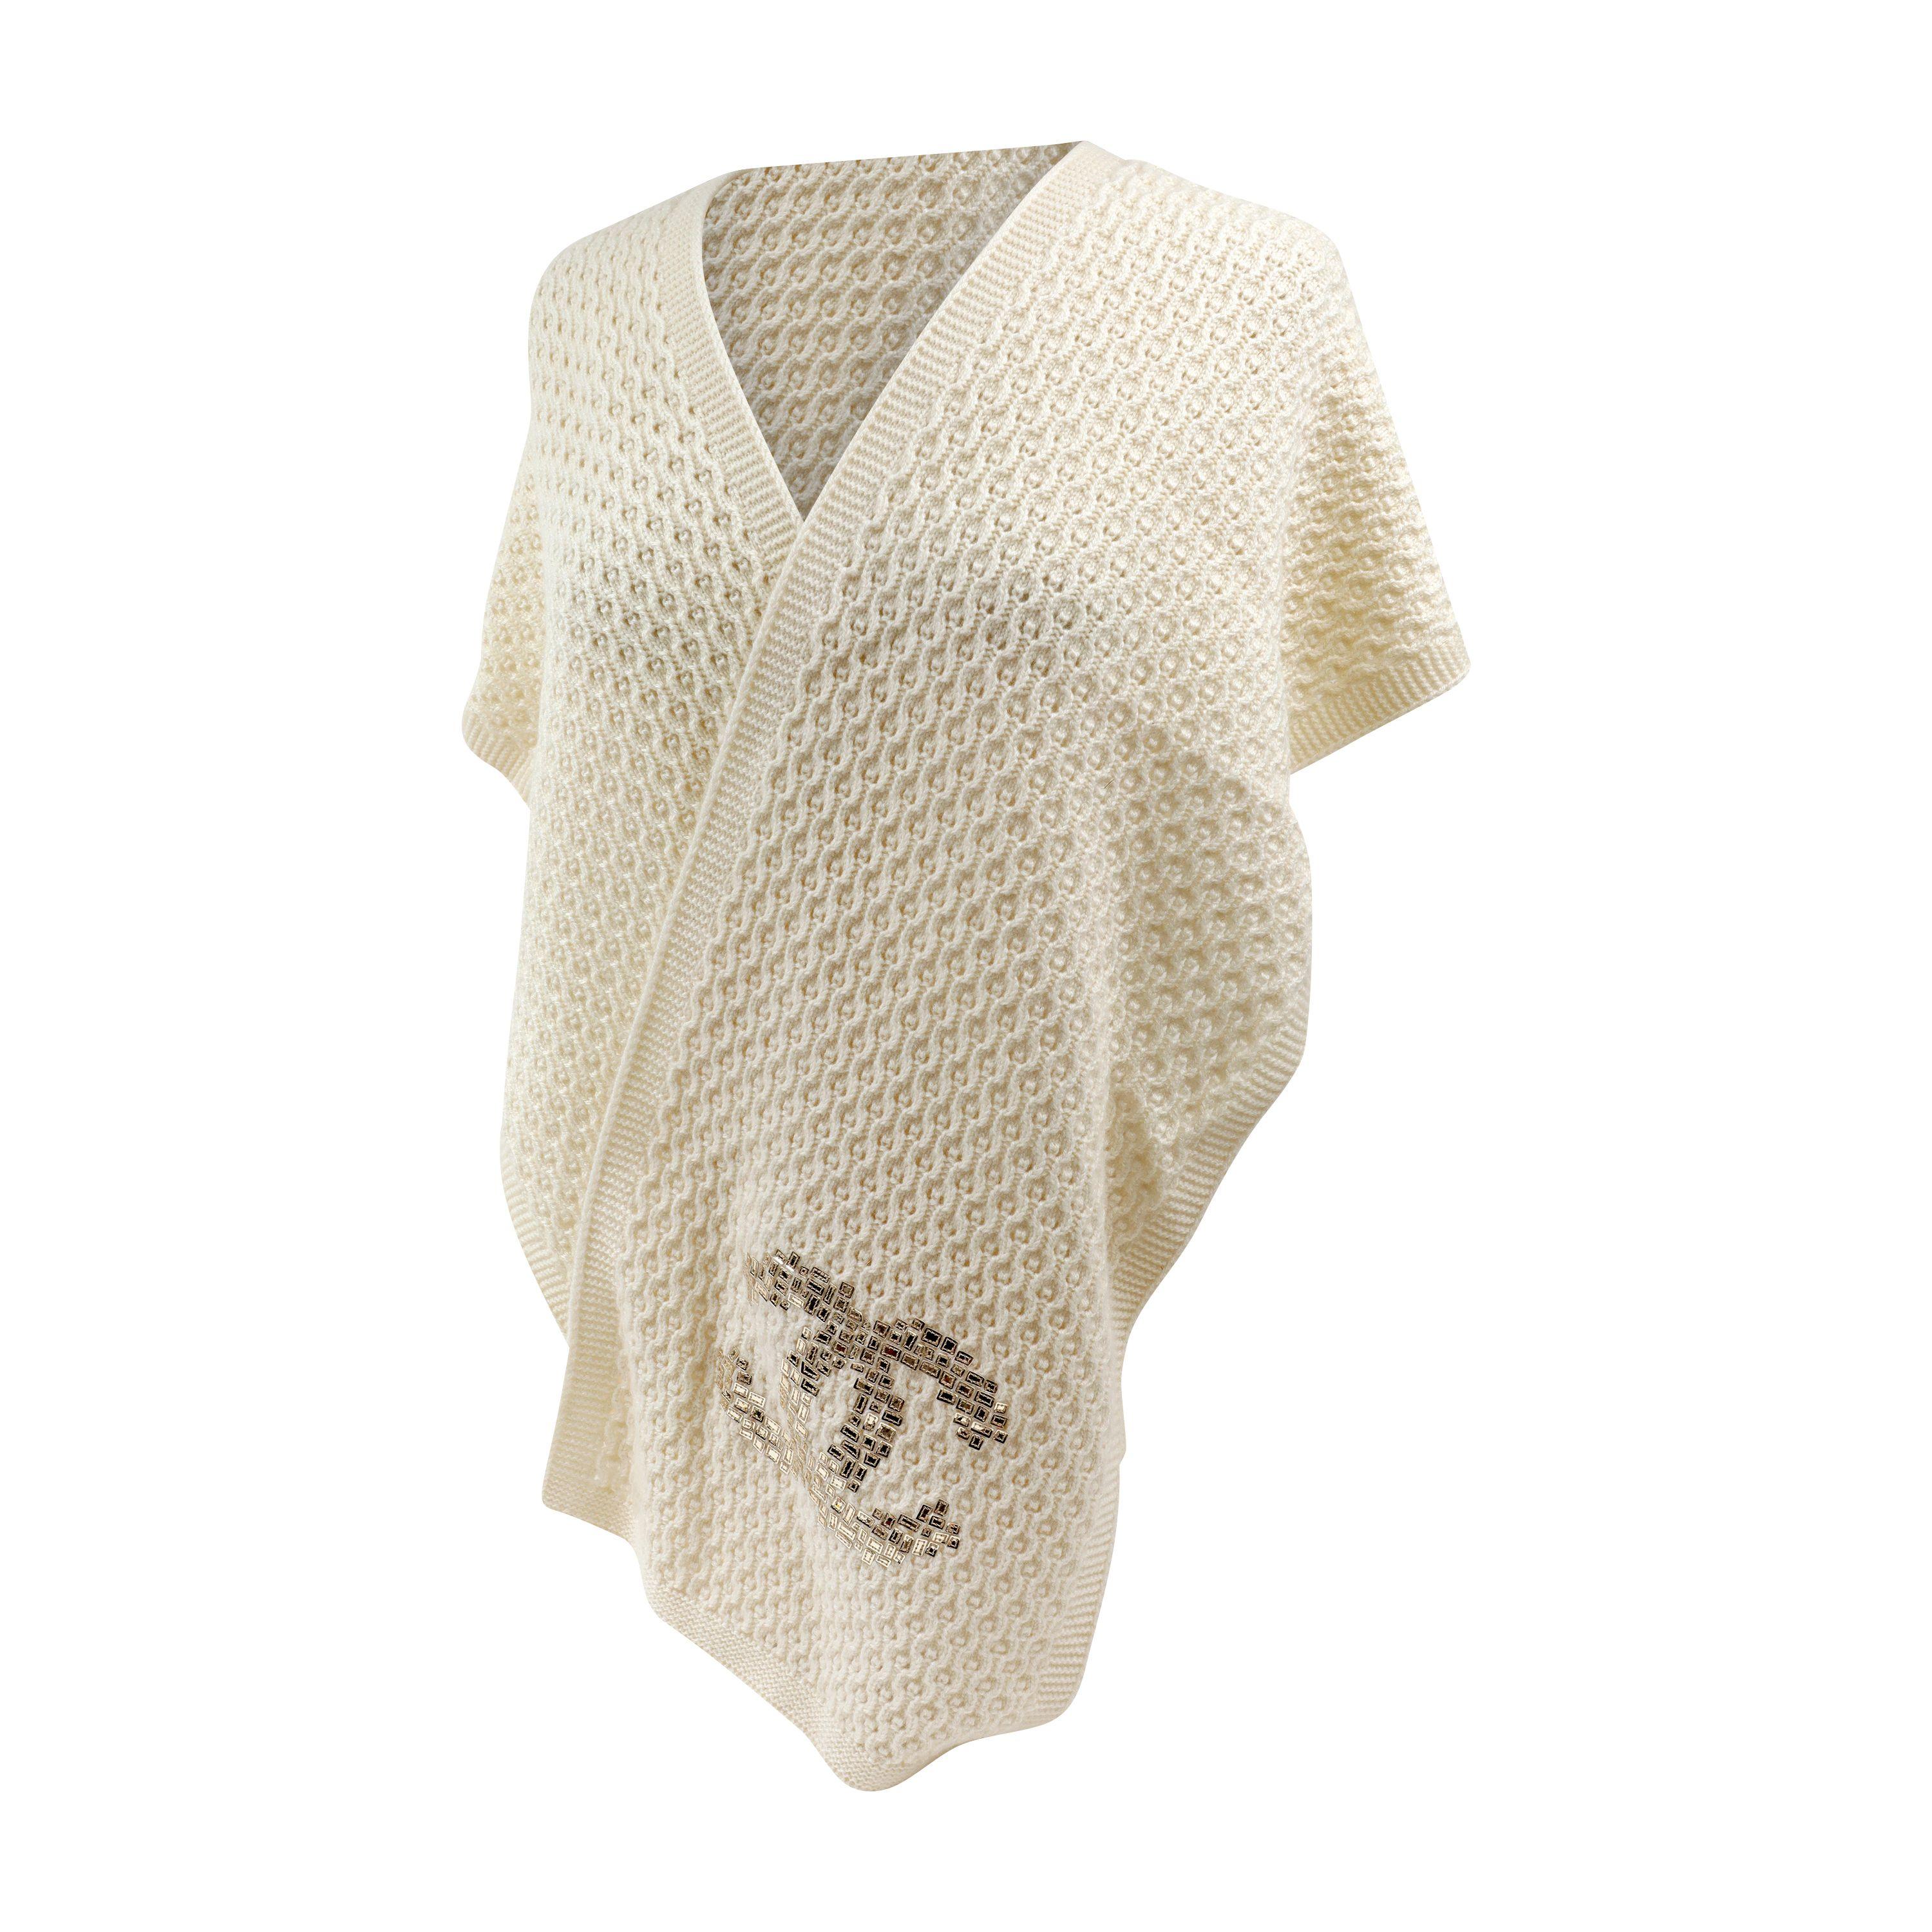 Cette authentique écharpe CC en cachemire et soie ivoire de Chanel est impeccable.  Écharpe longue en tricot nid d'abeille blanc cachemire mélangé avec ornements CC en paillettes.  
12